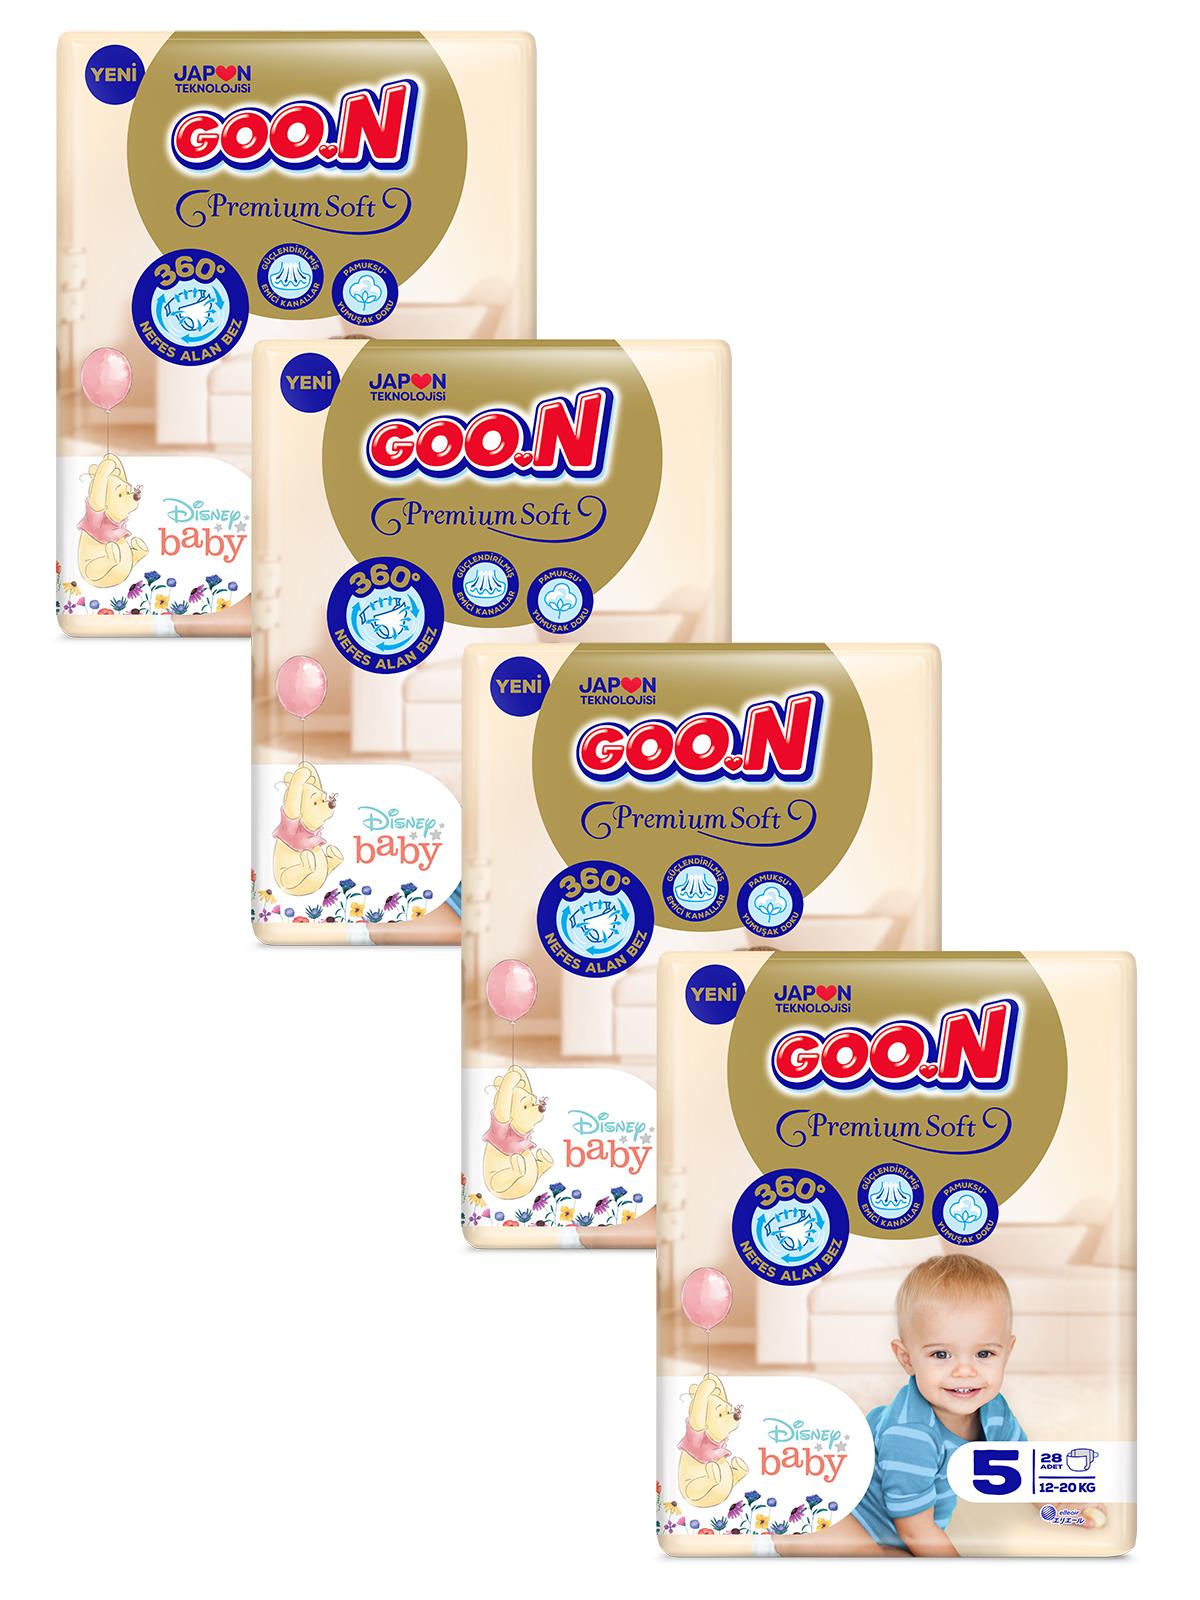 Goon Premium Soft Bebek Bezi 5 Beden 112 Adet Fırsat Paketi